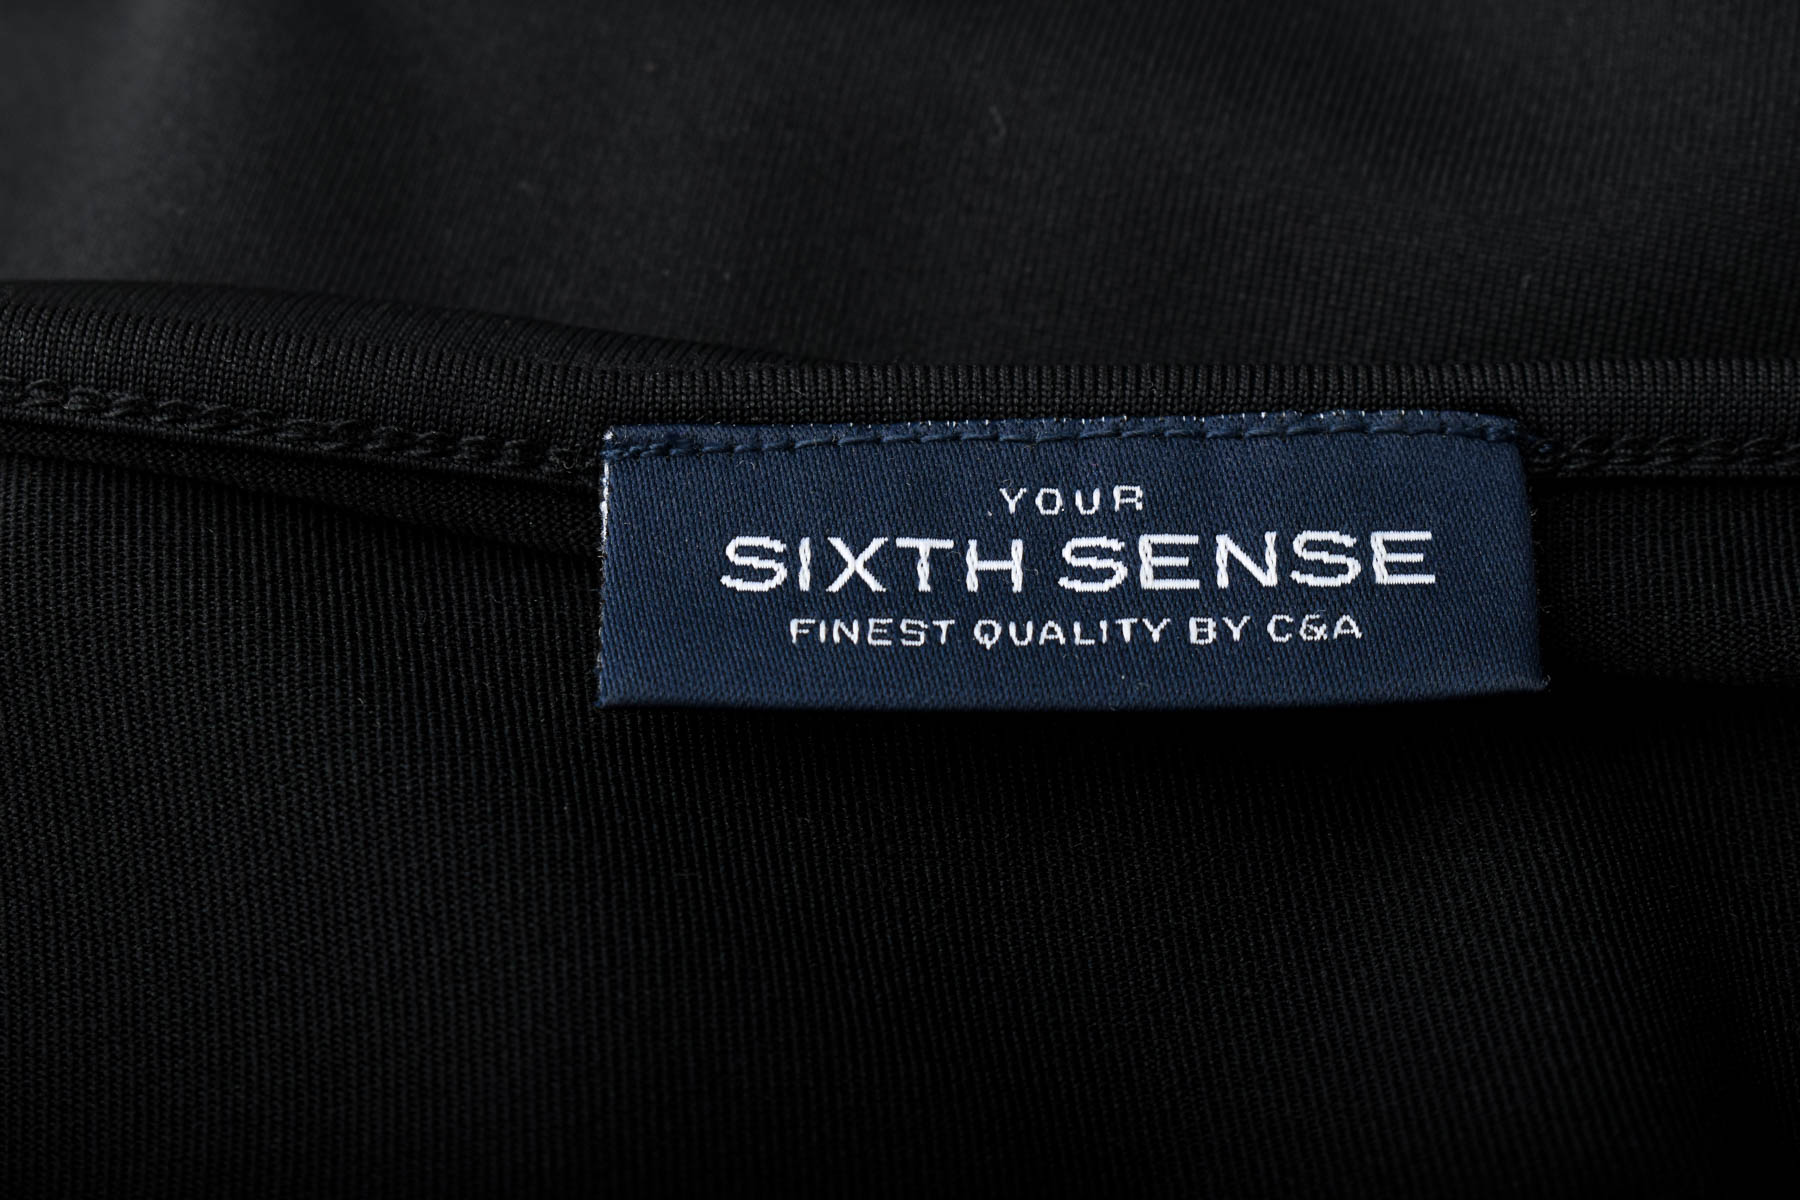 Γυνεκείο τοπ - Sixth Sense - 2